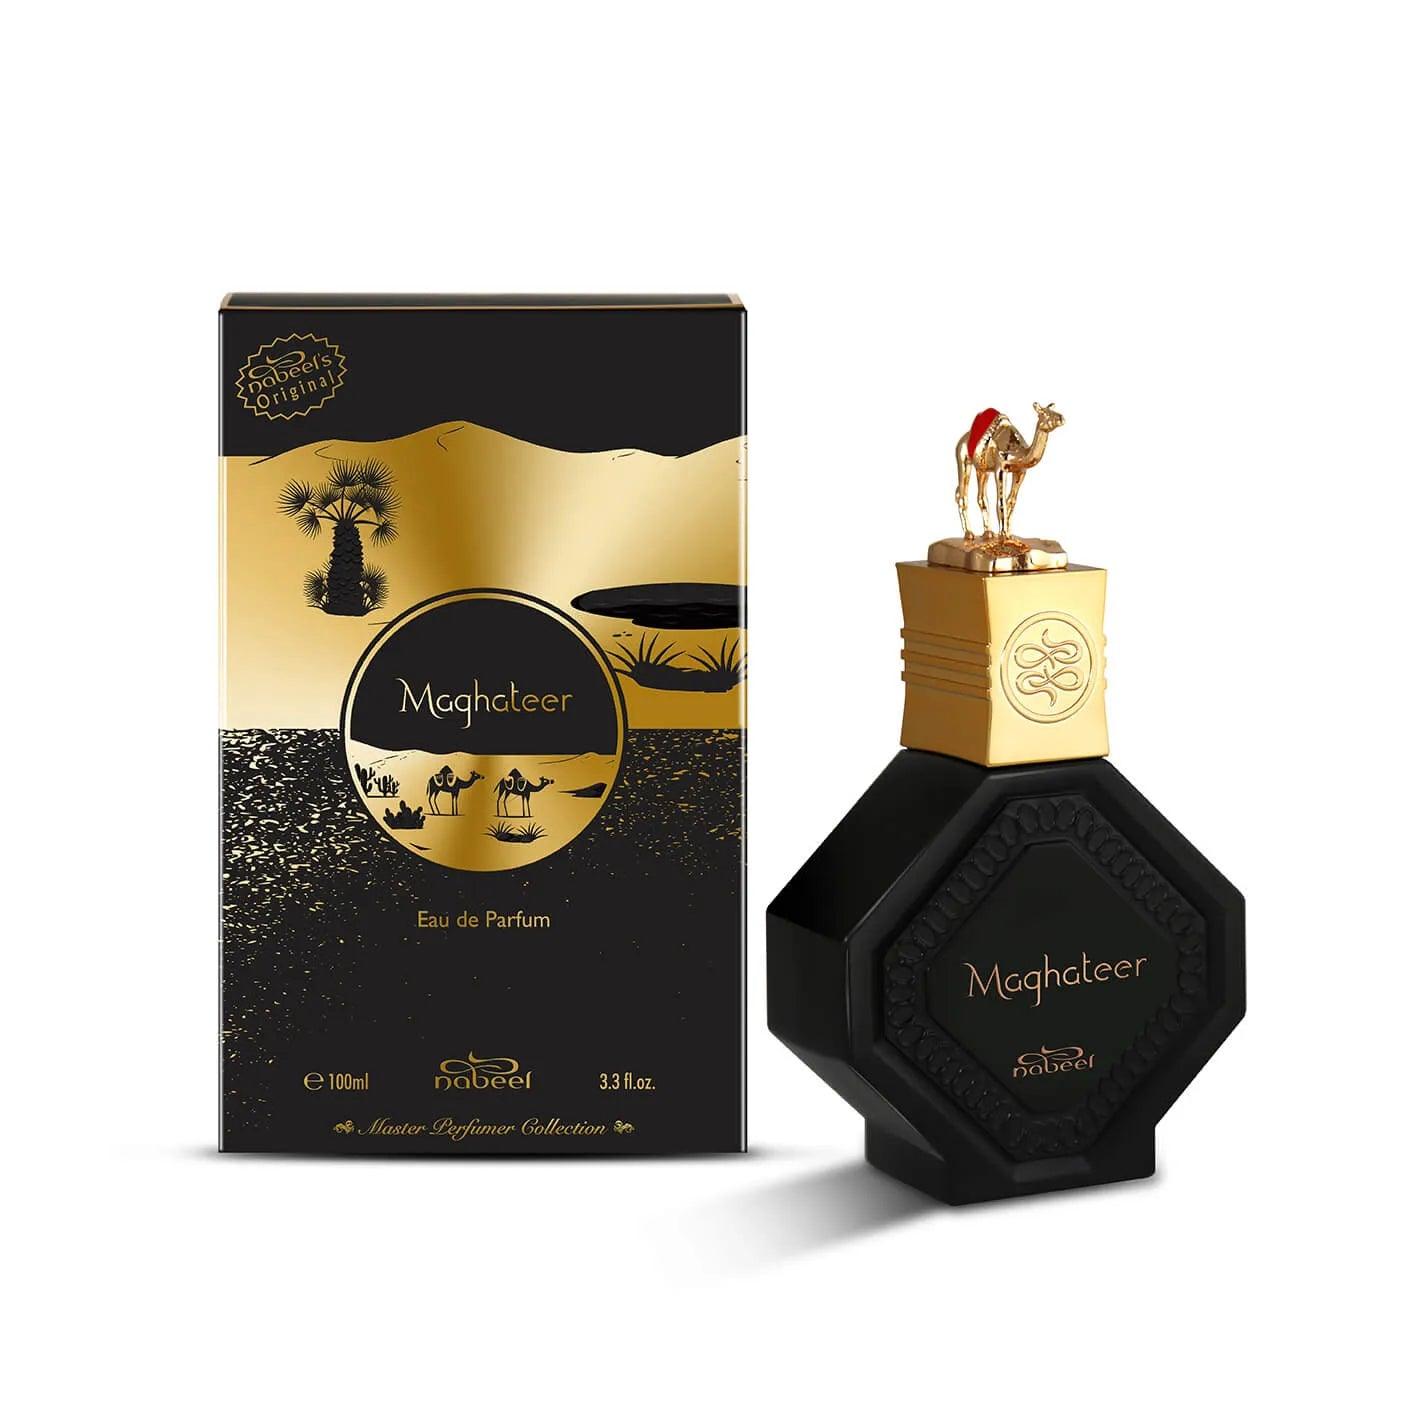 Nabeel  BJ Distribuzione Luxury Perfumes